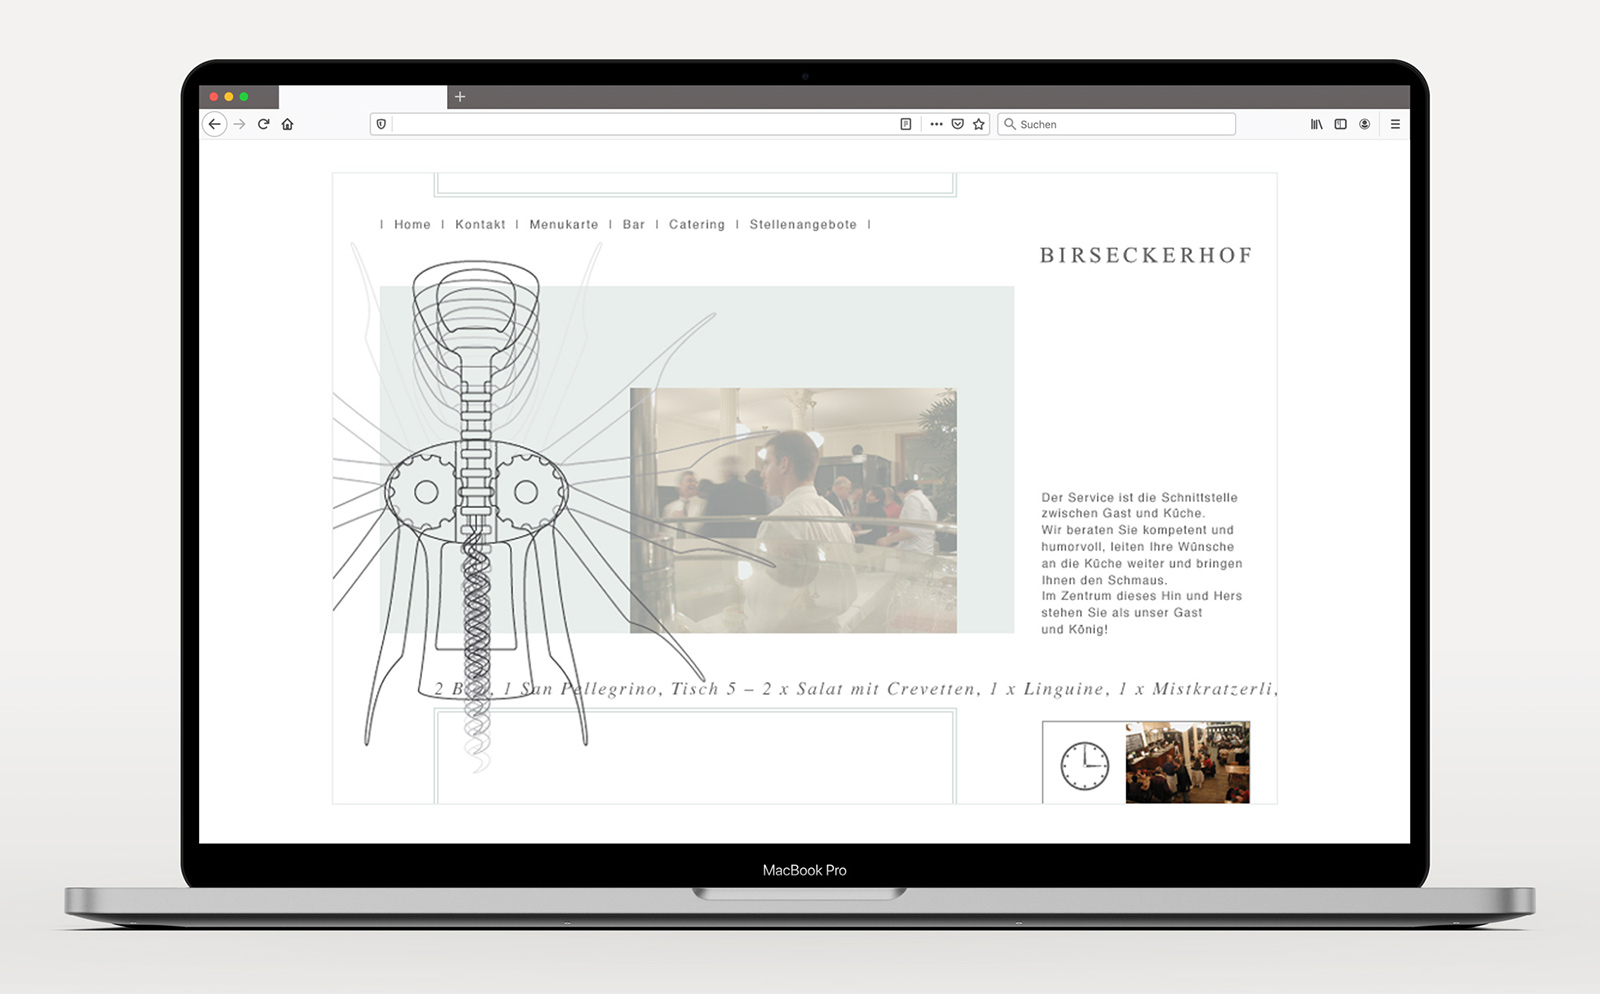 Gestaltung der Website des Restaurants Birseckerhof